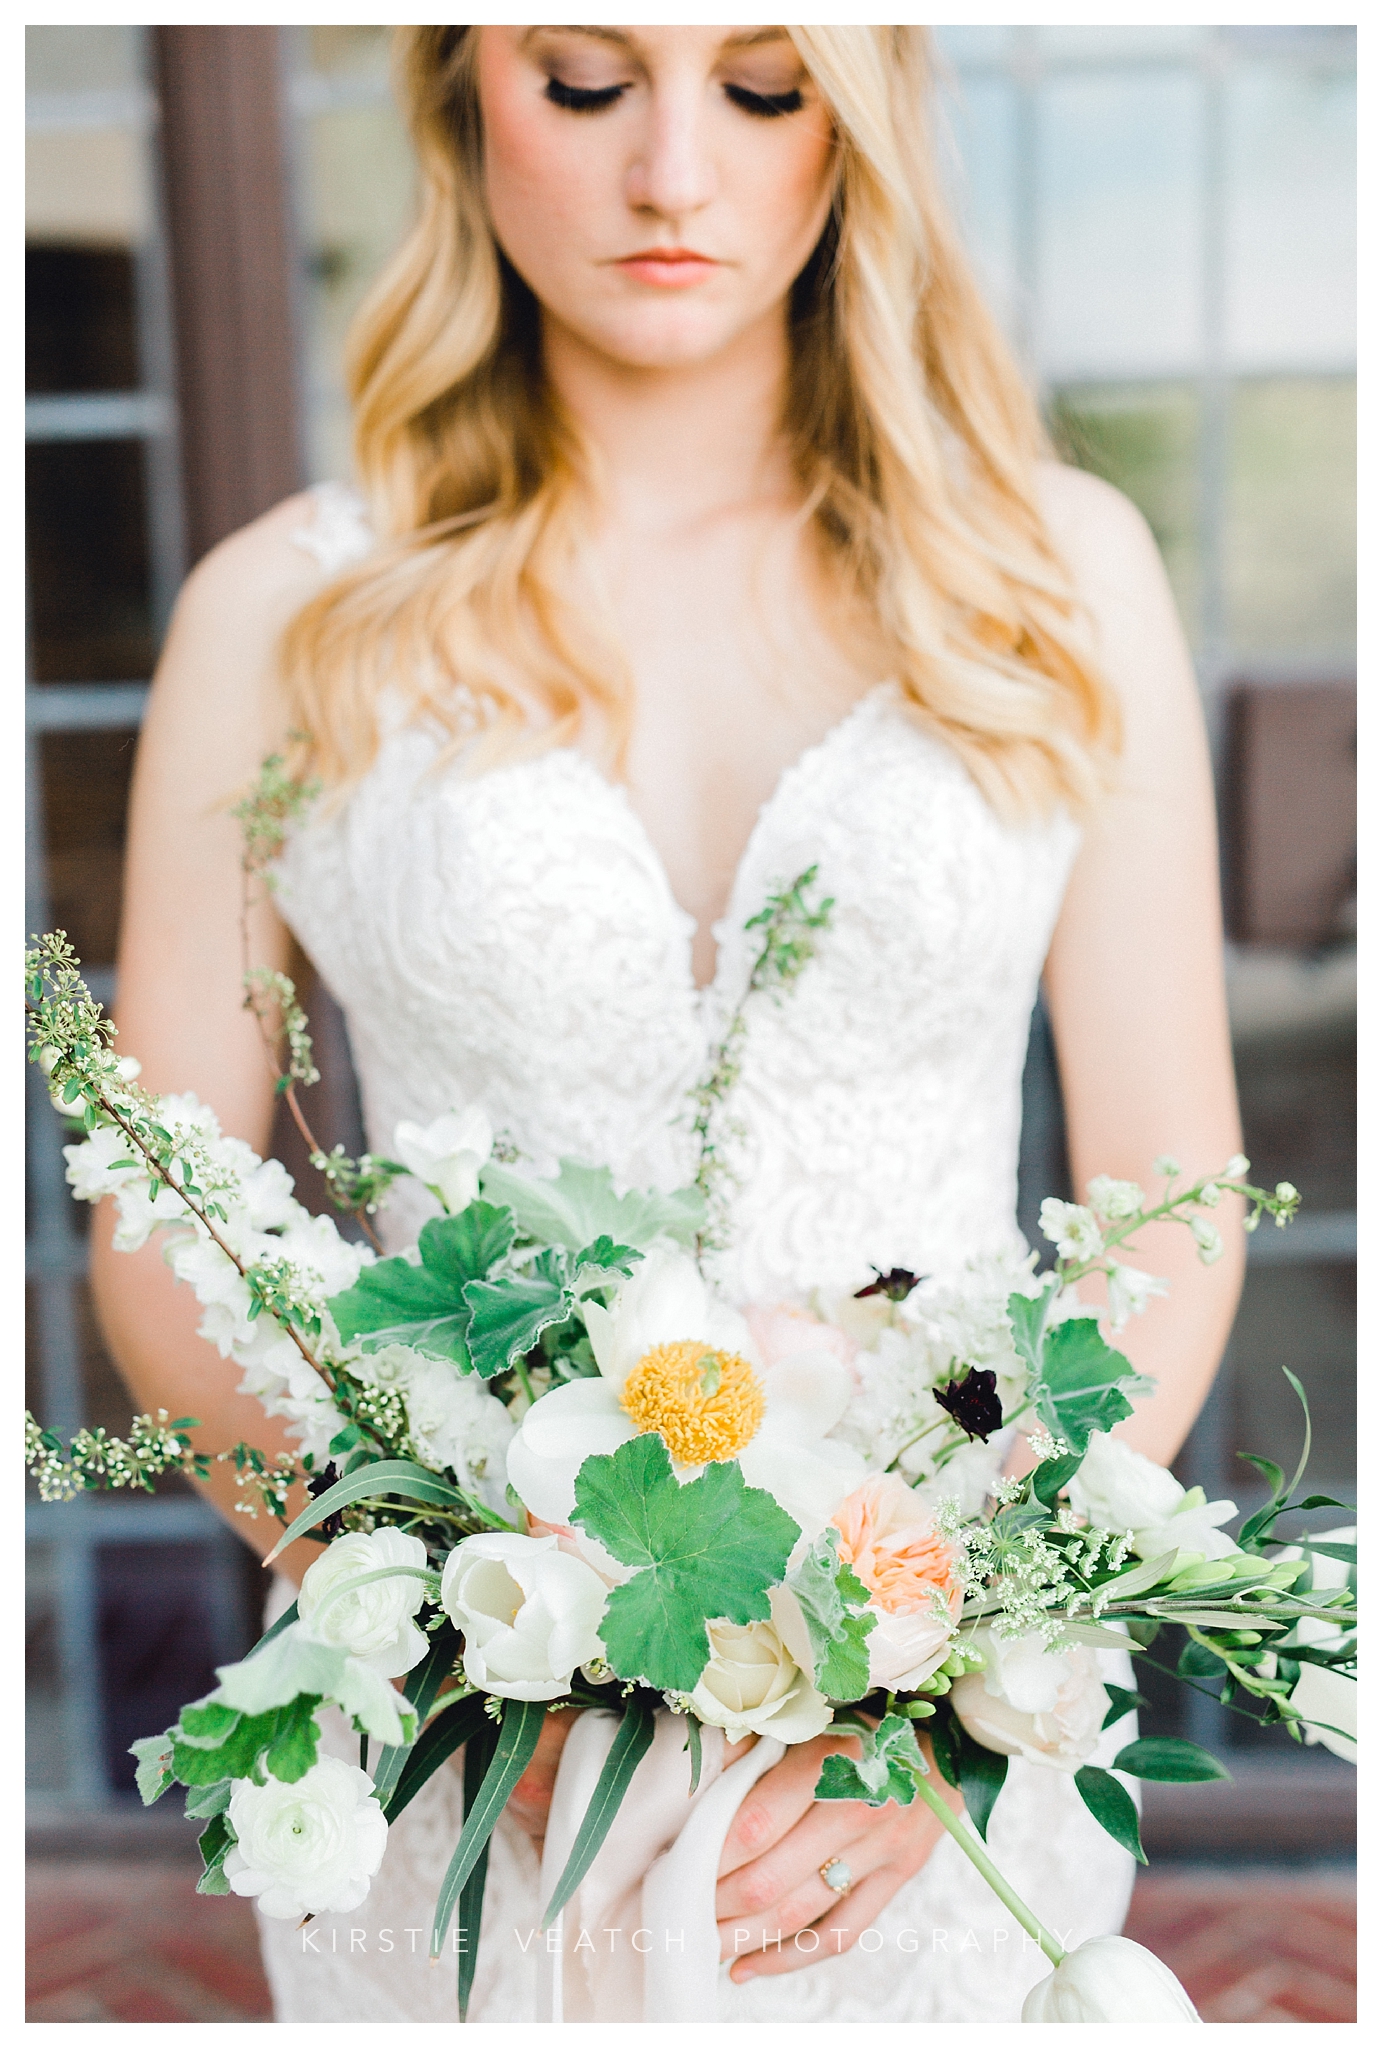 Spring Iowa Wedding Inspiration | Kirstie Veatch Photography Blog